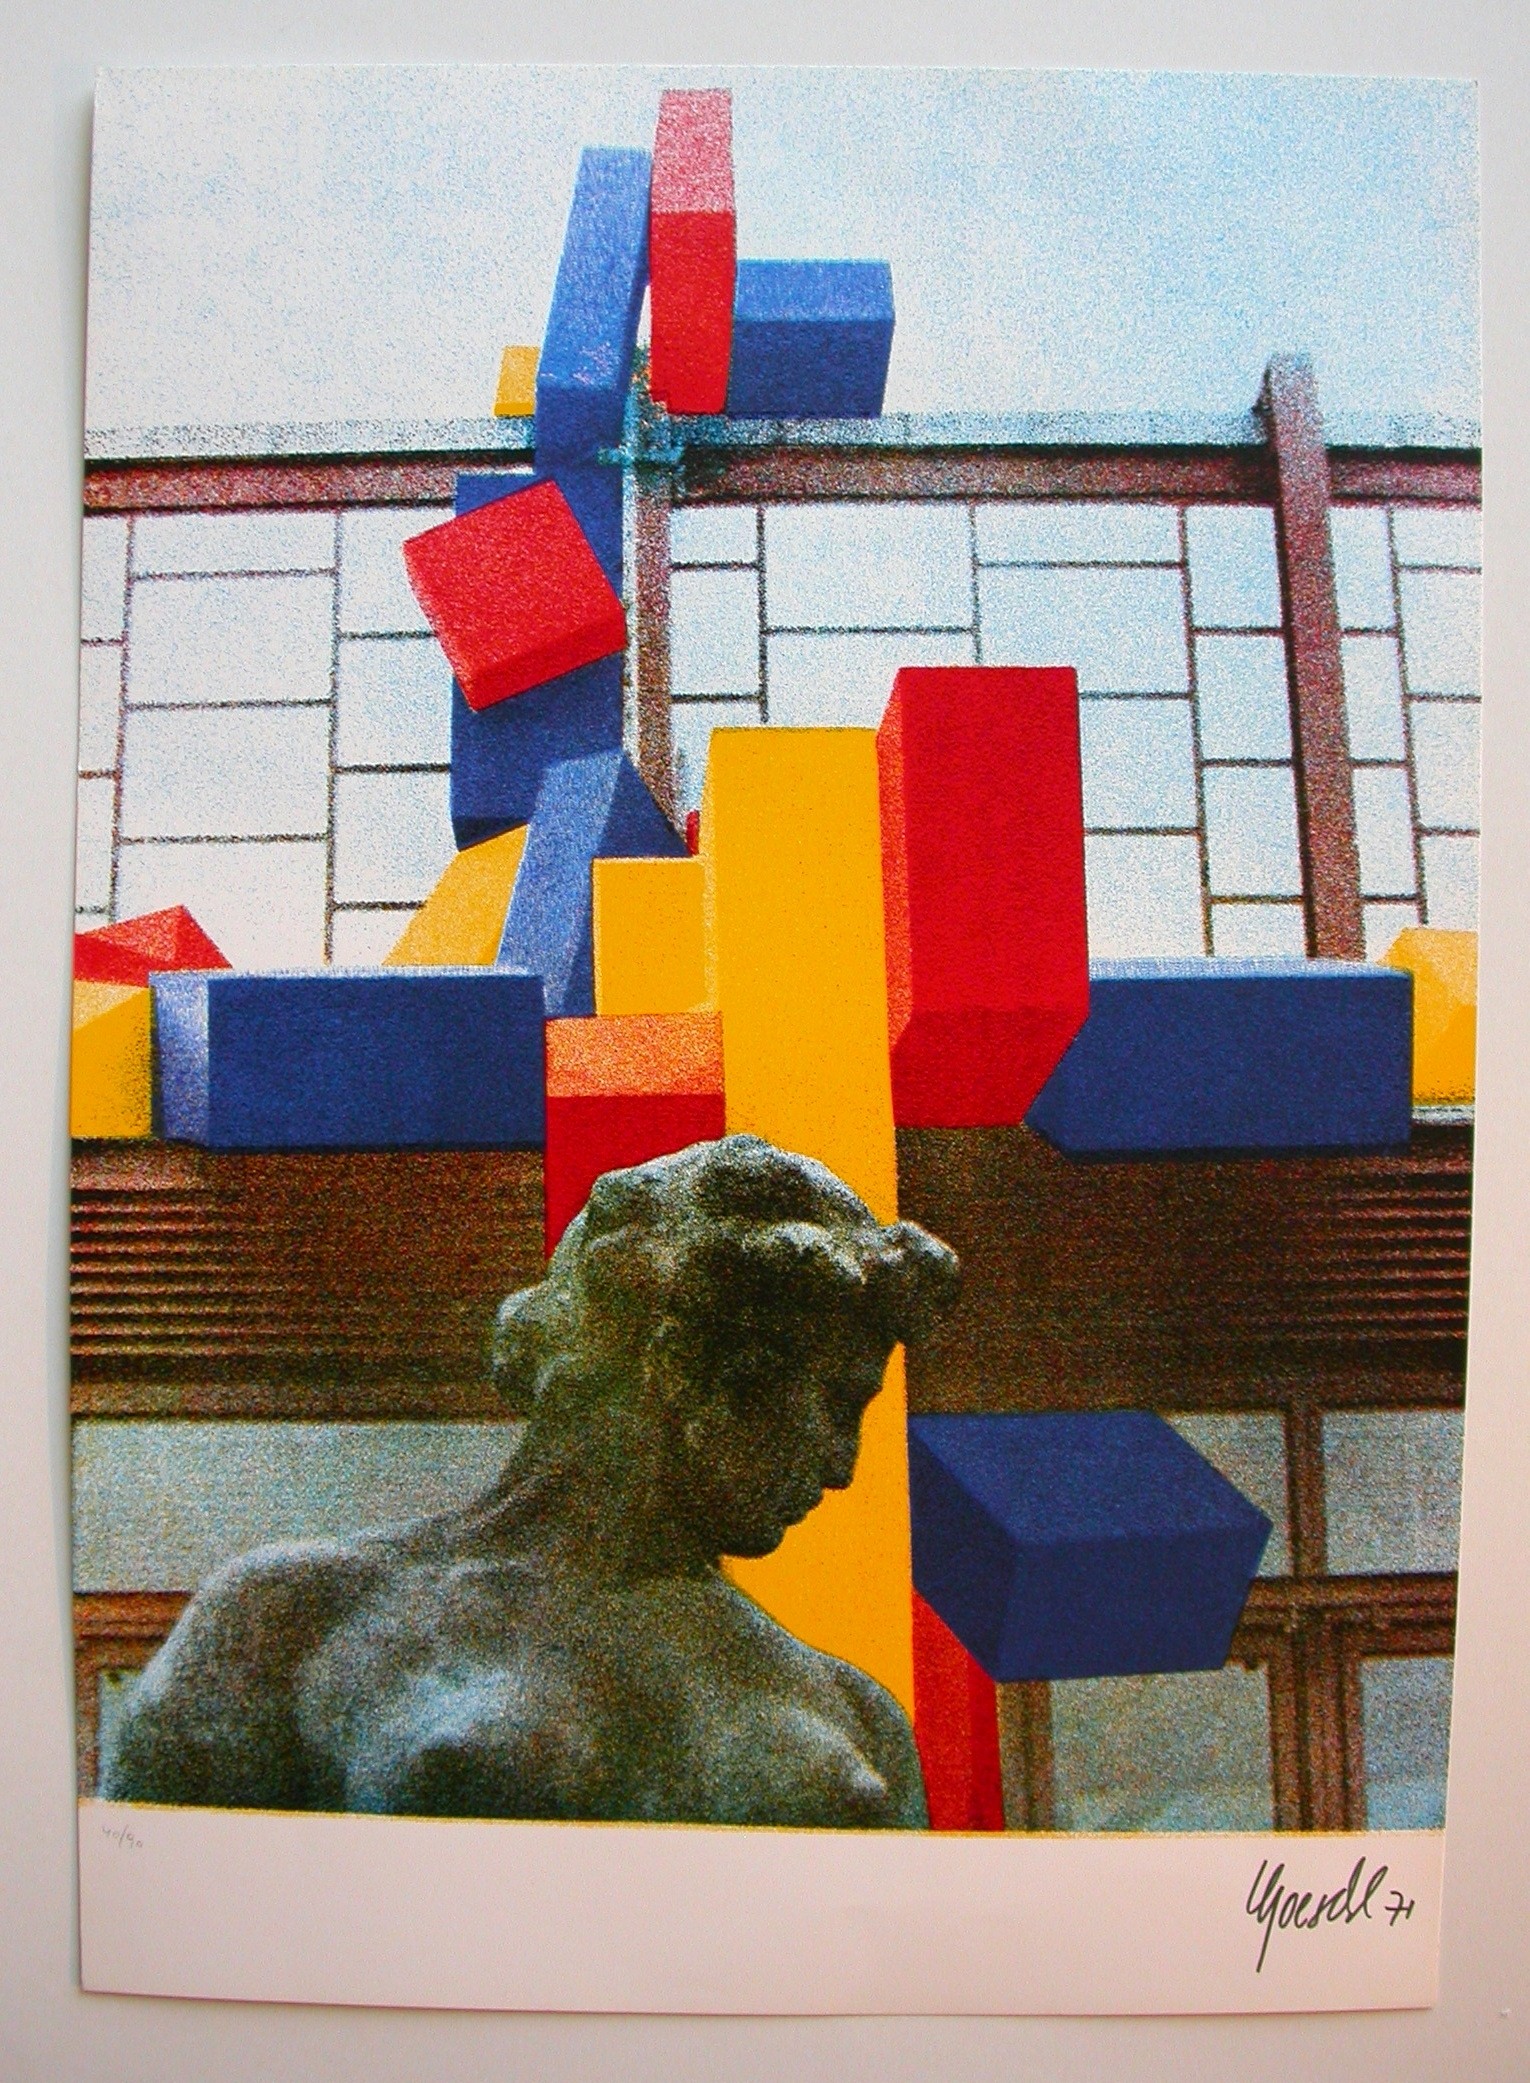 Göschl "Ohne Titel, 1971"